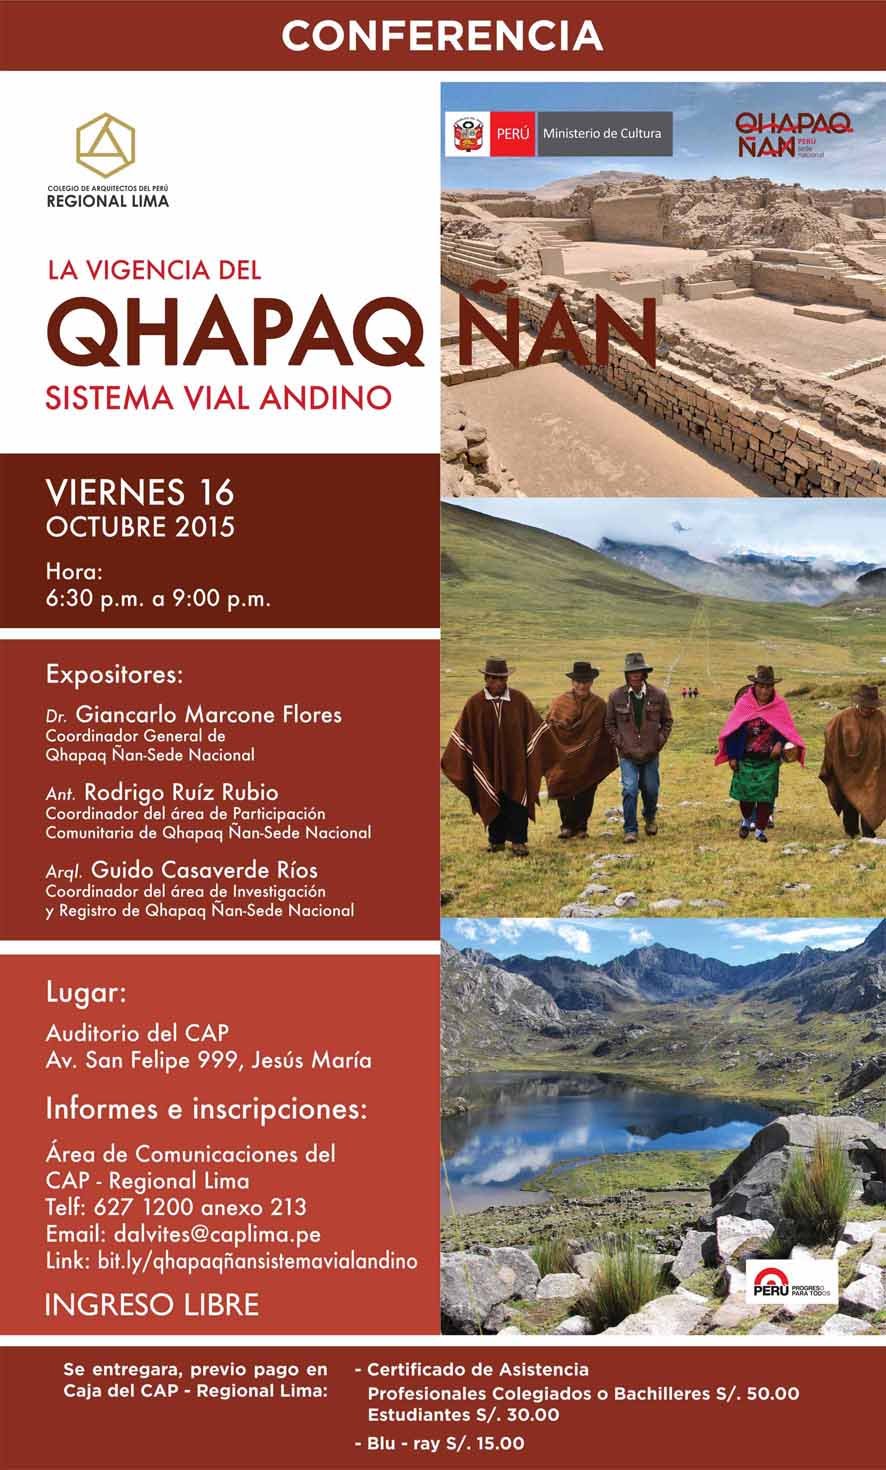 La vigencia del Qhapaq – Sistema vial andino